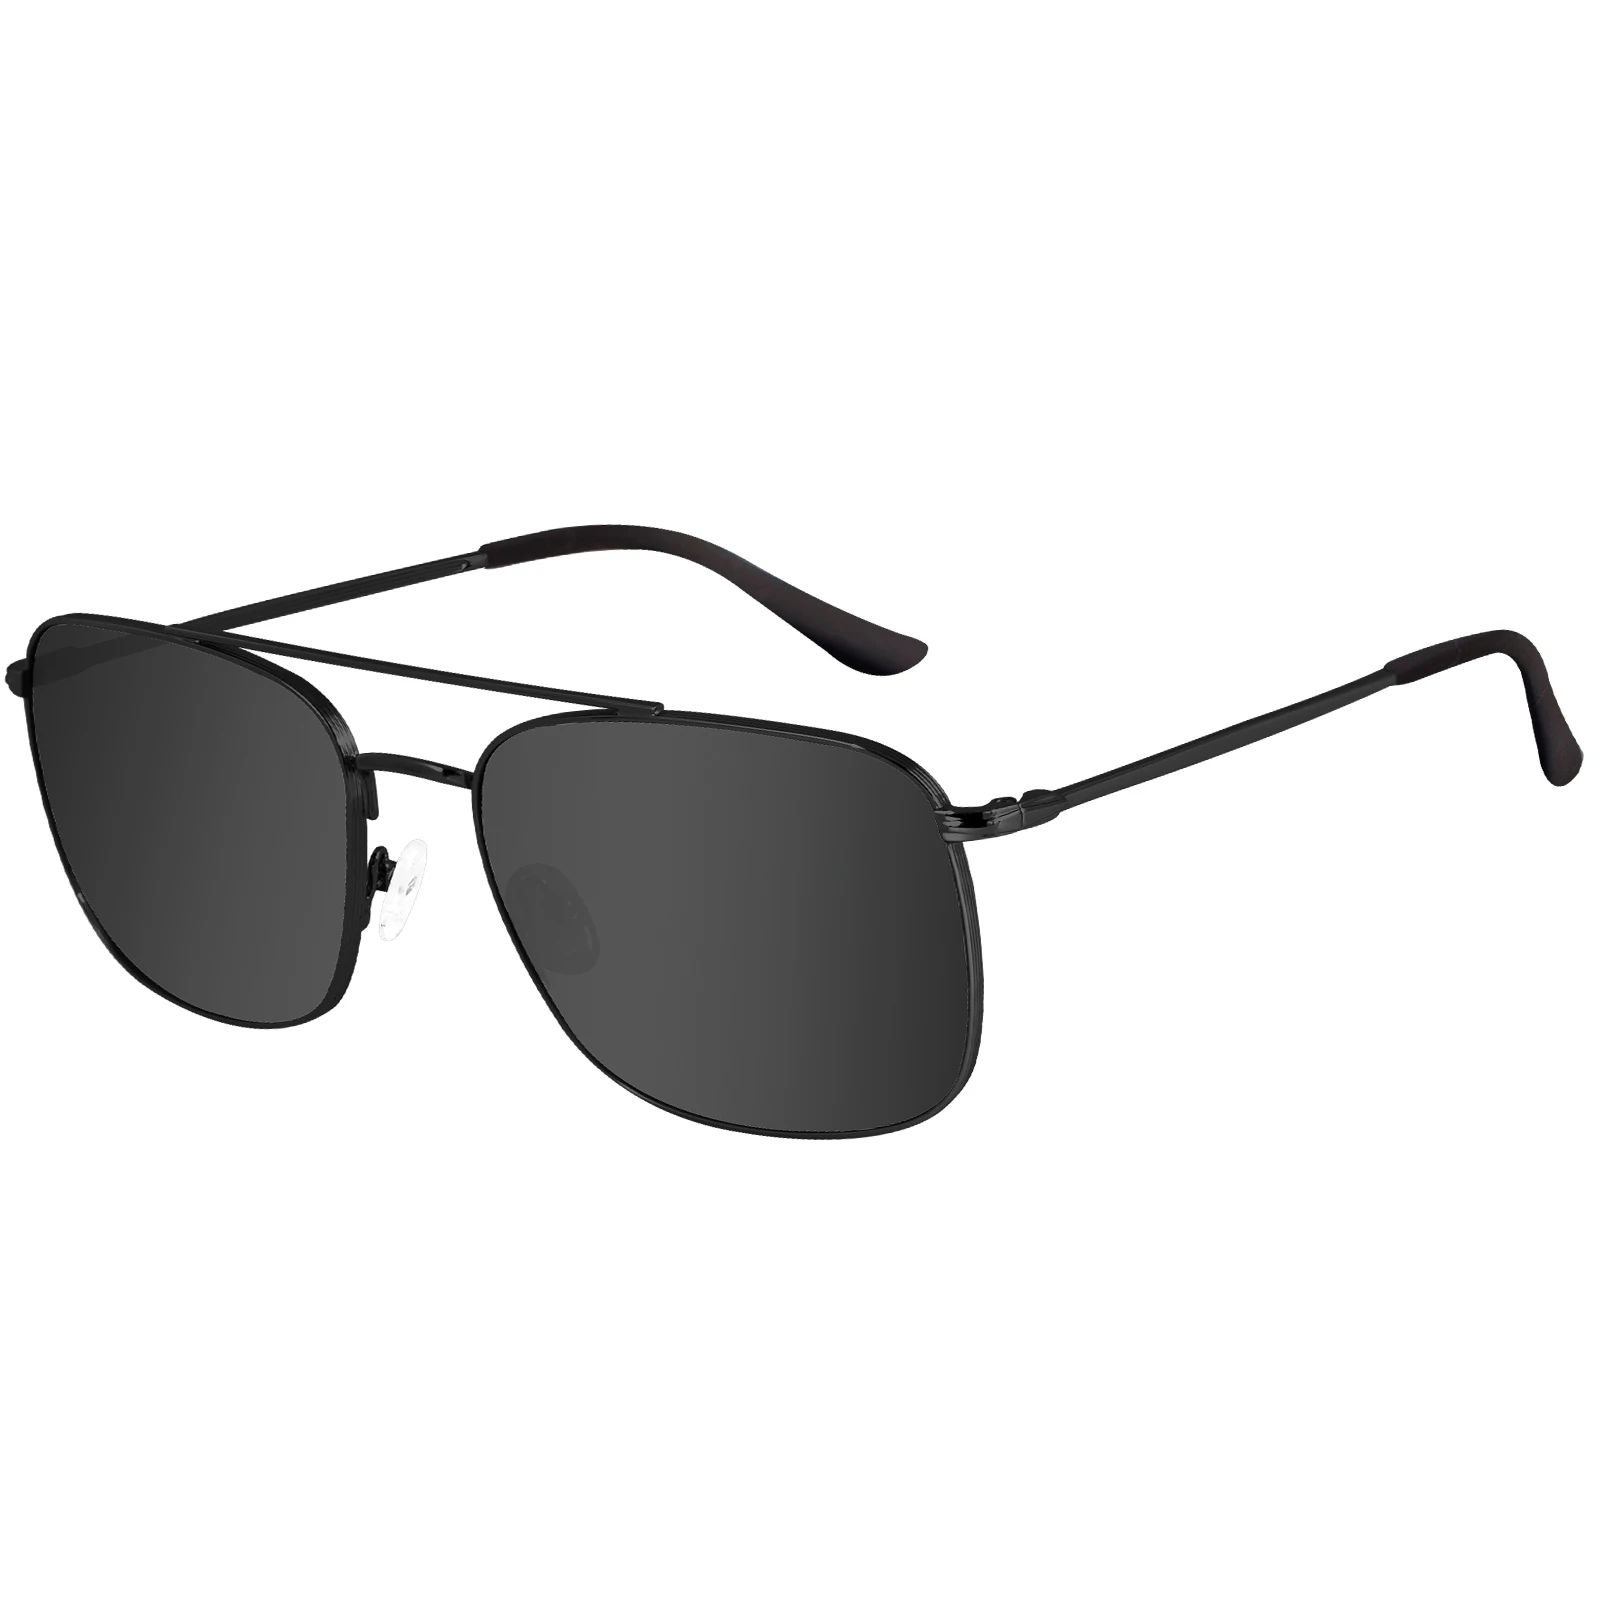 

MAXJULI Polarized Aviator Sunglasses for Men Women Retro Square Style Sun Glasses UV400 Protection Shades 8816